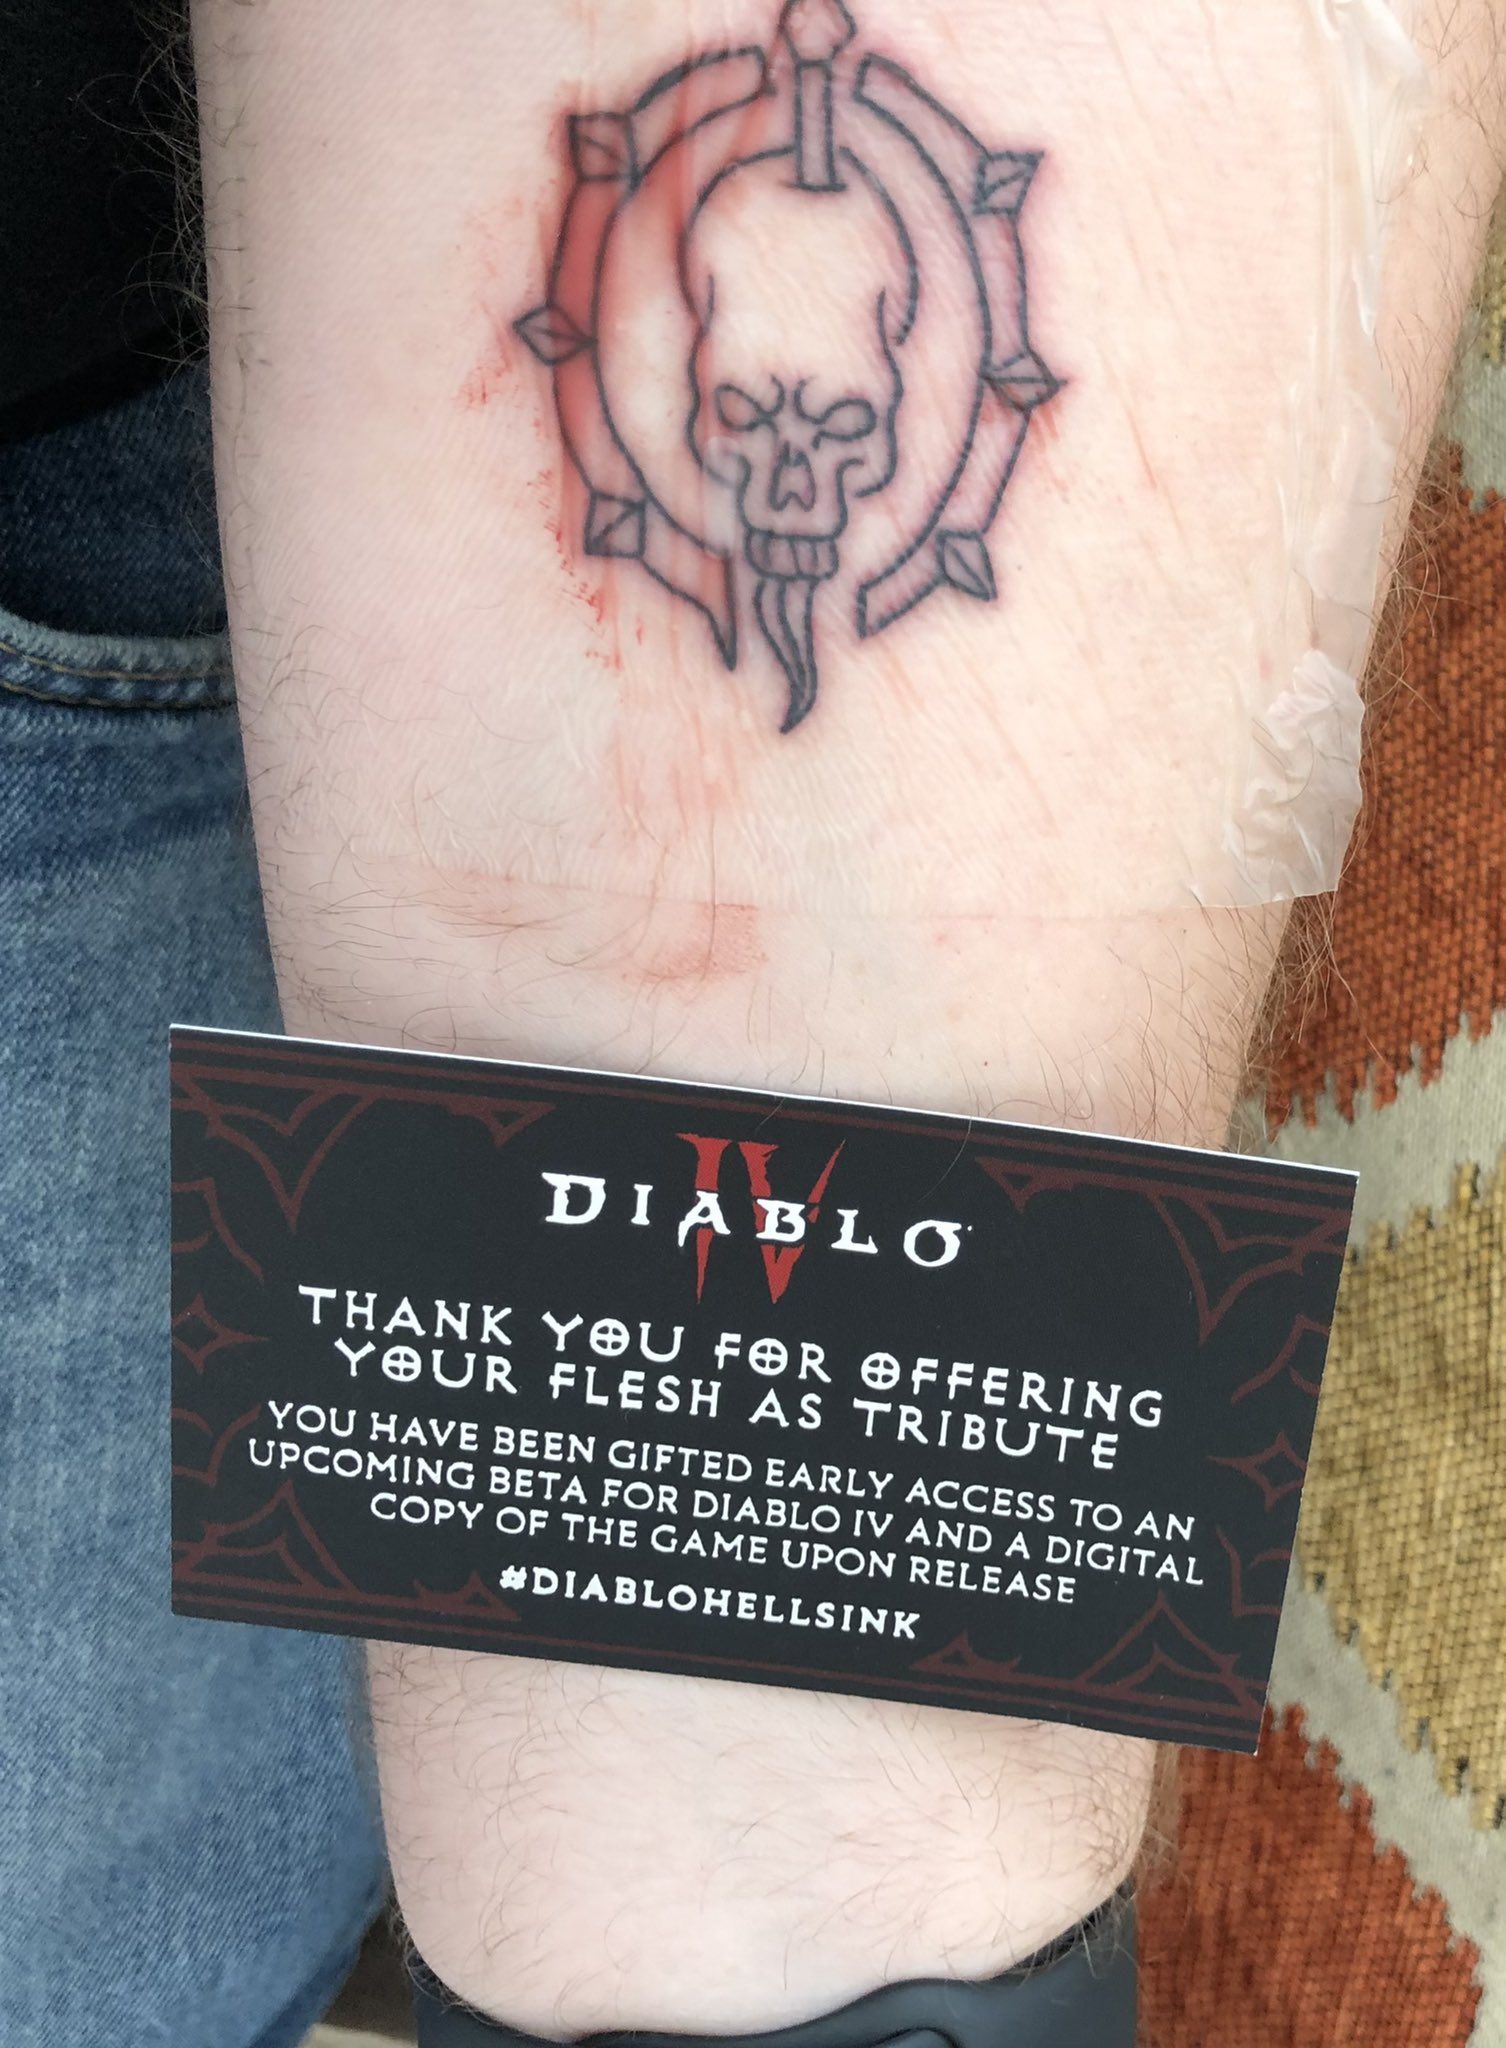 Татуировки. Акция Diablo Hell’s Ink. Источник: imgur.com